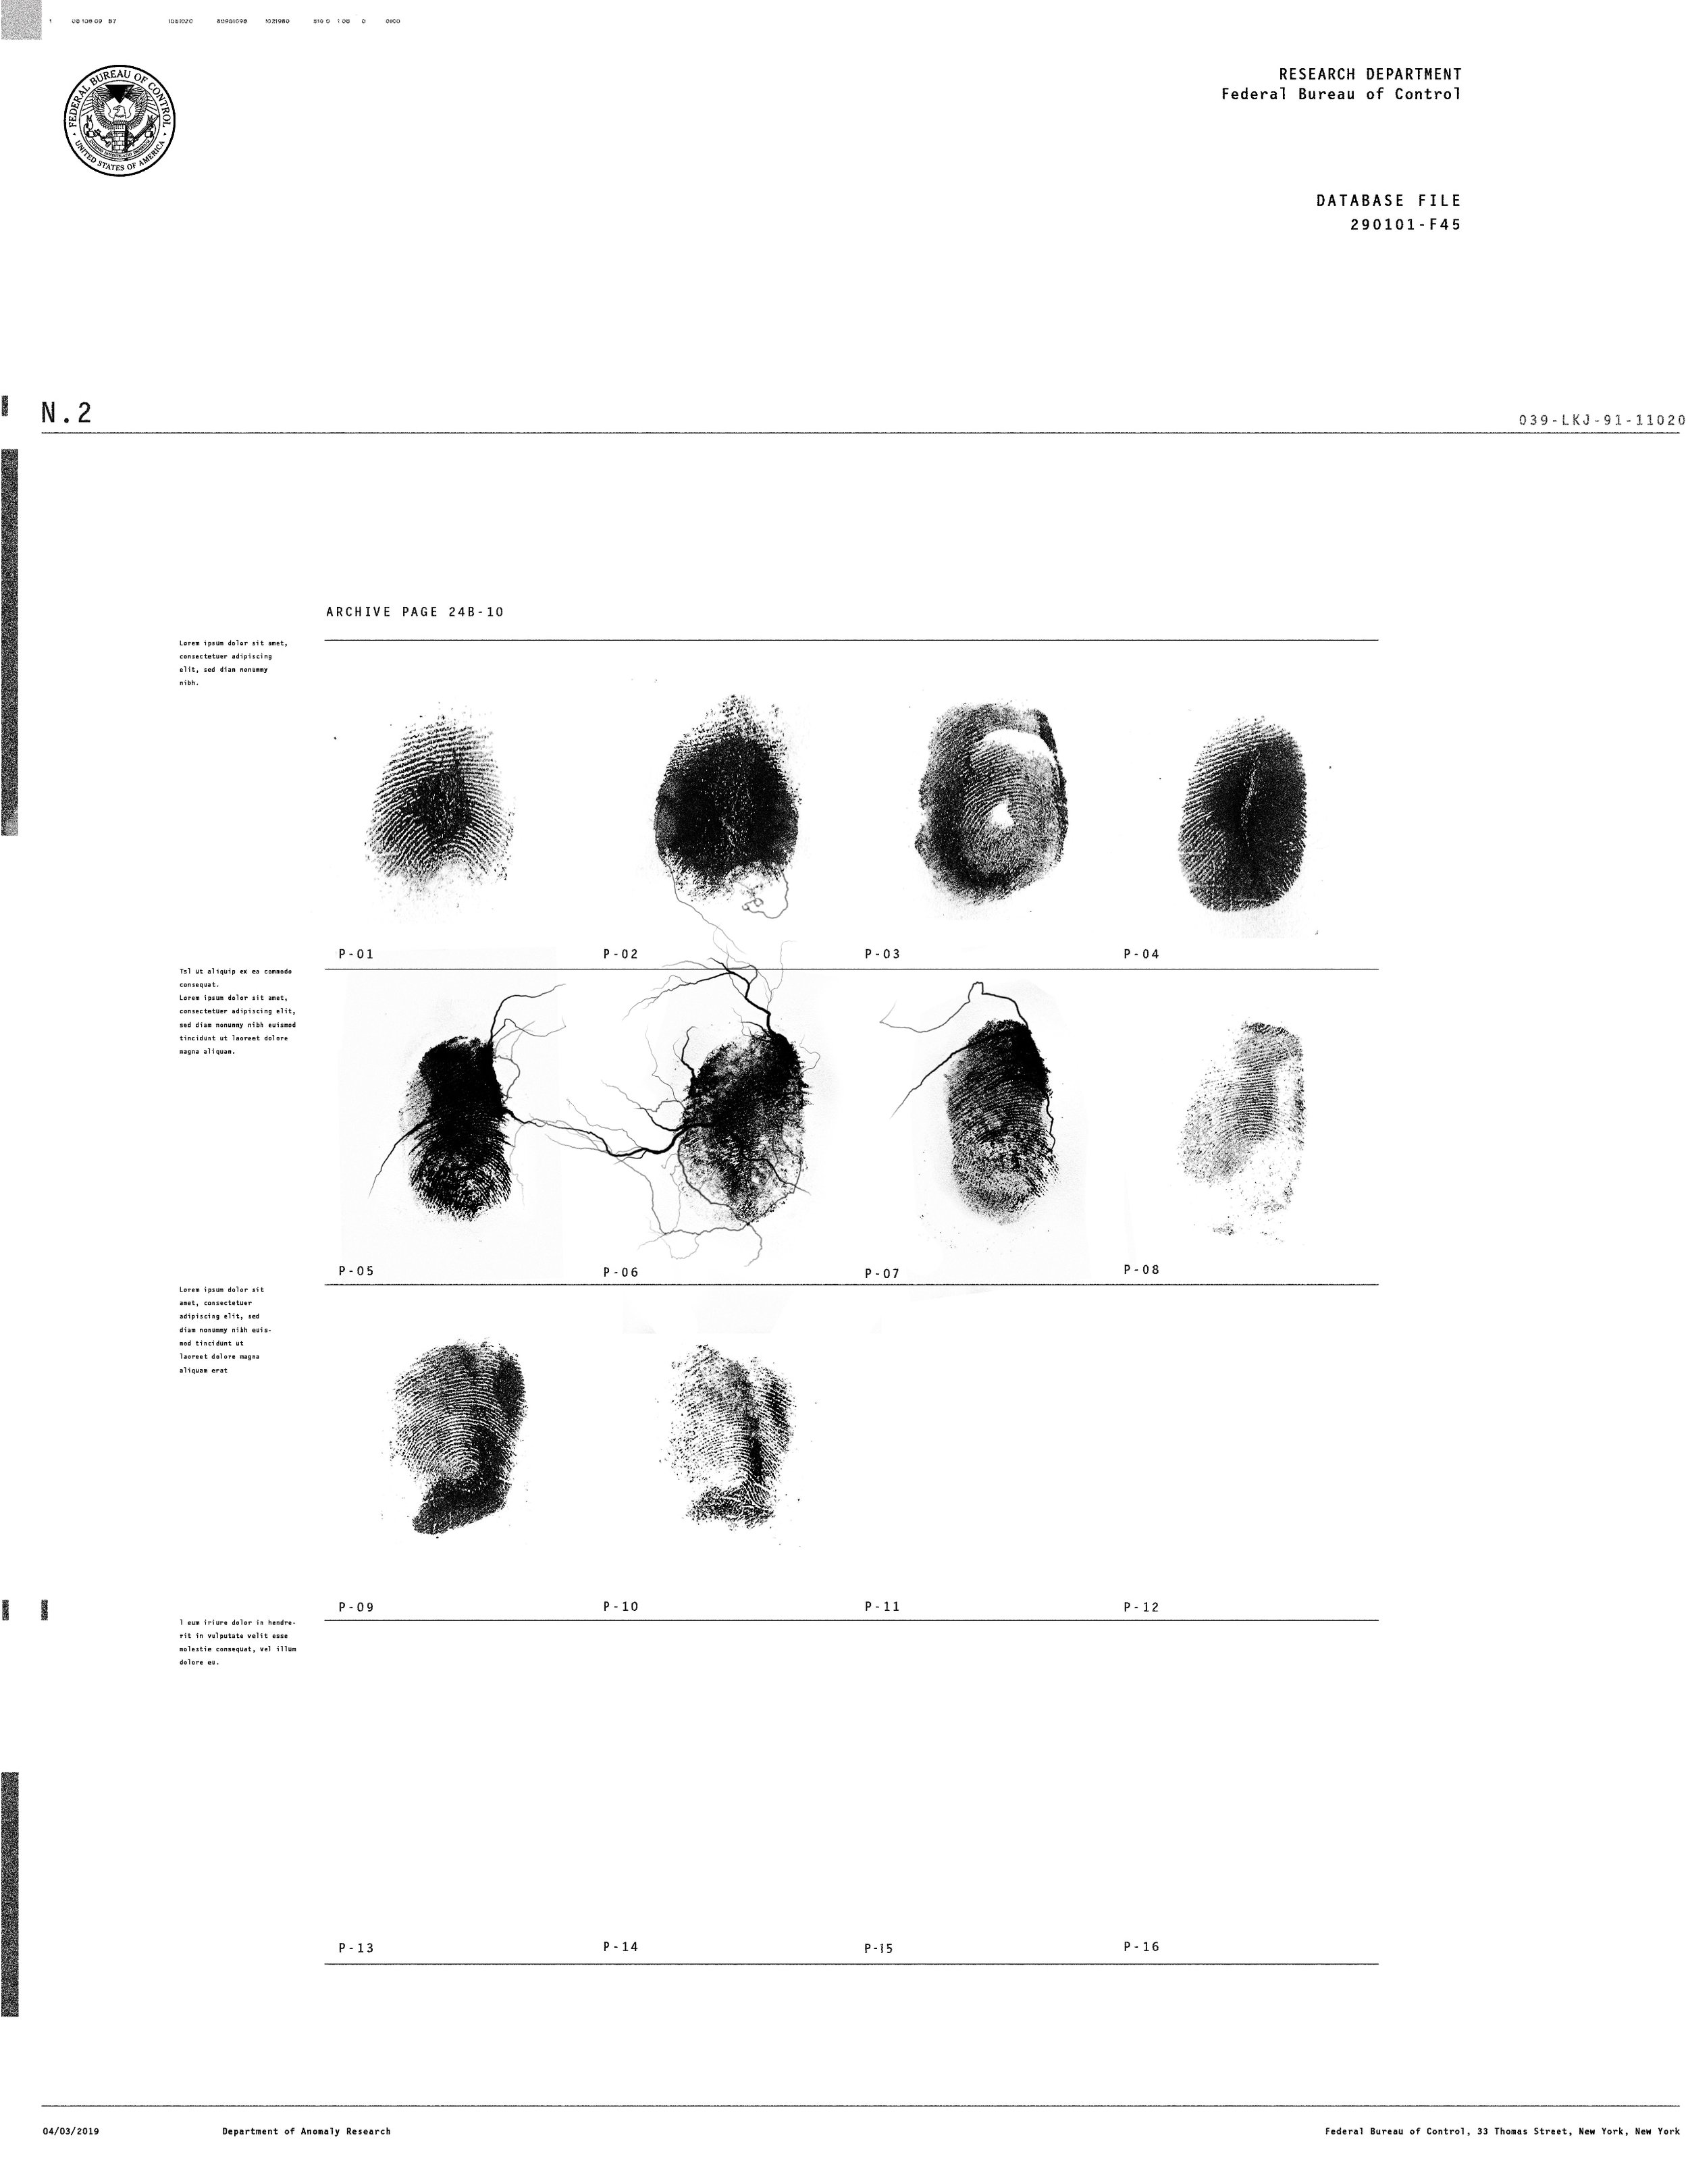 19. Fingerprints_Animation_02_0184.jpg